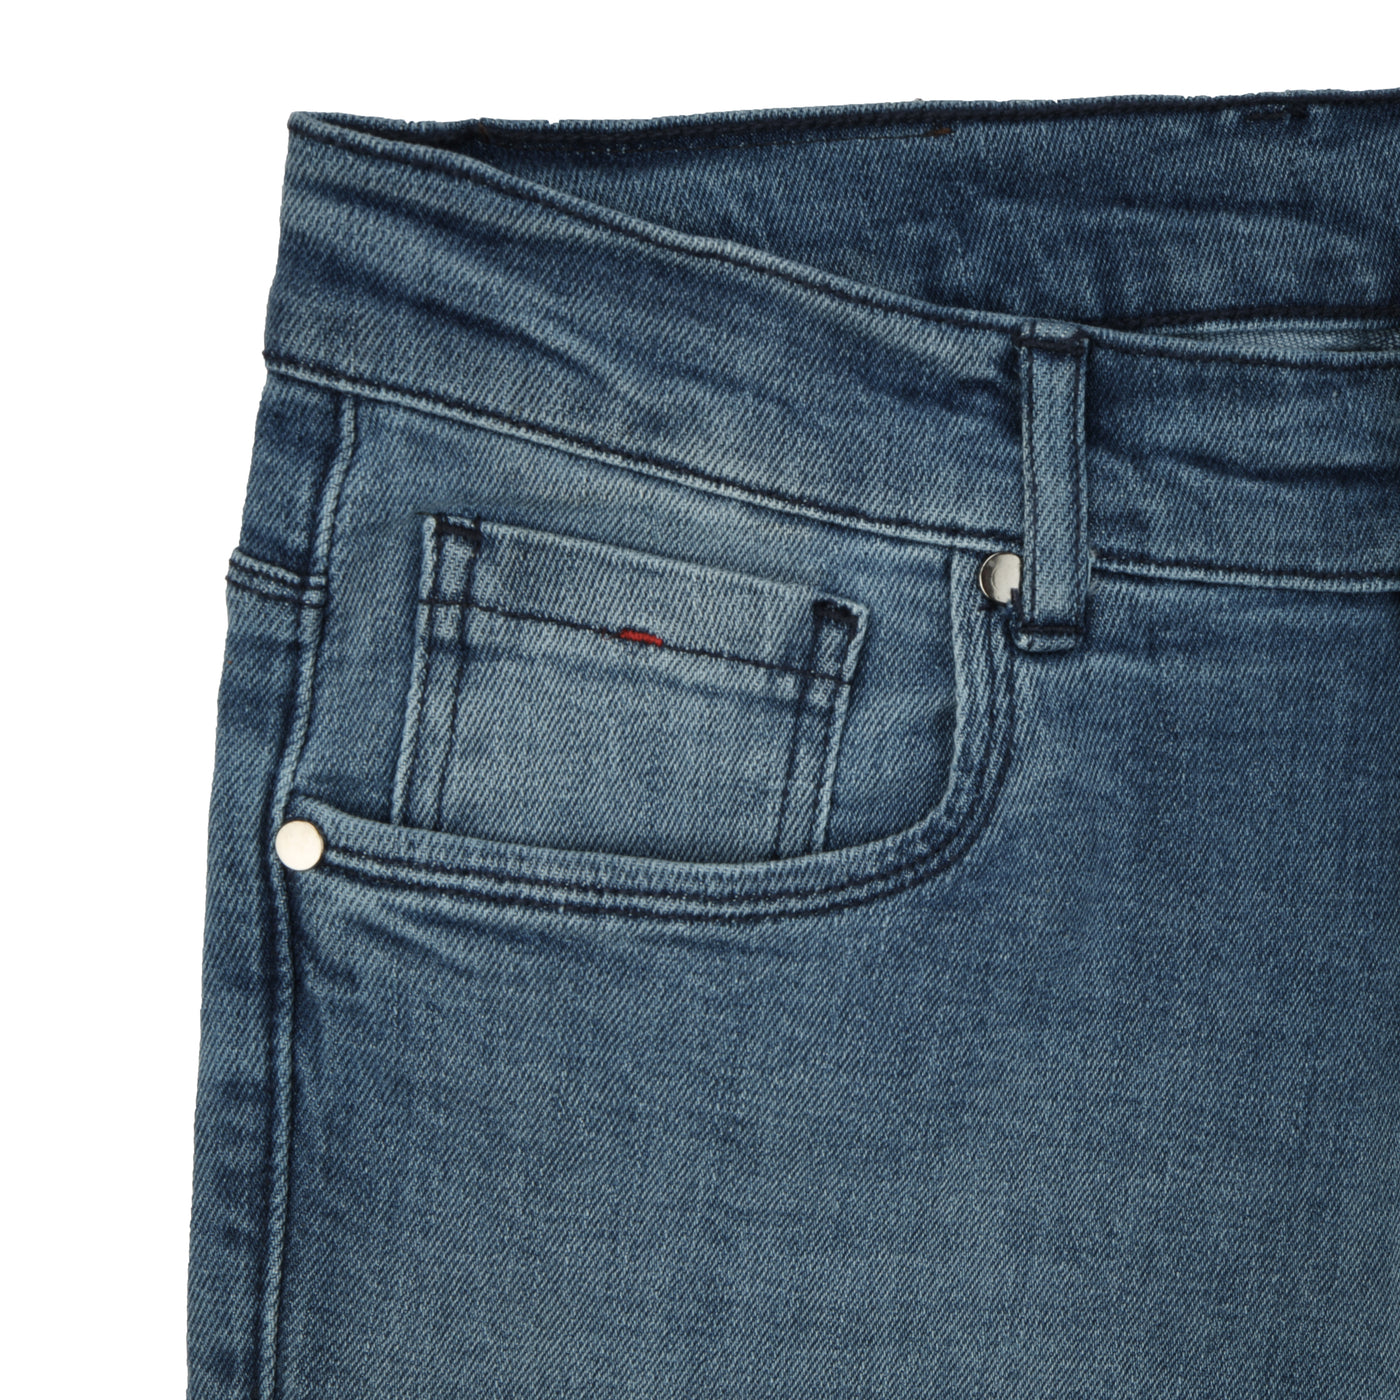 Jeans pant 30400101